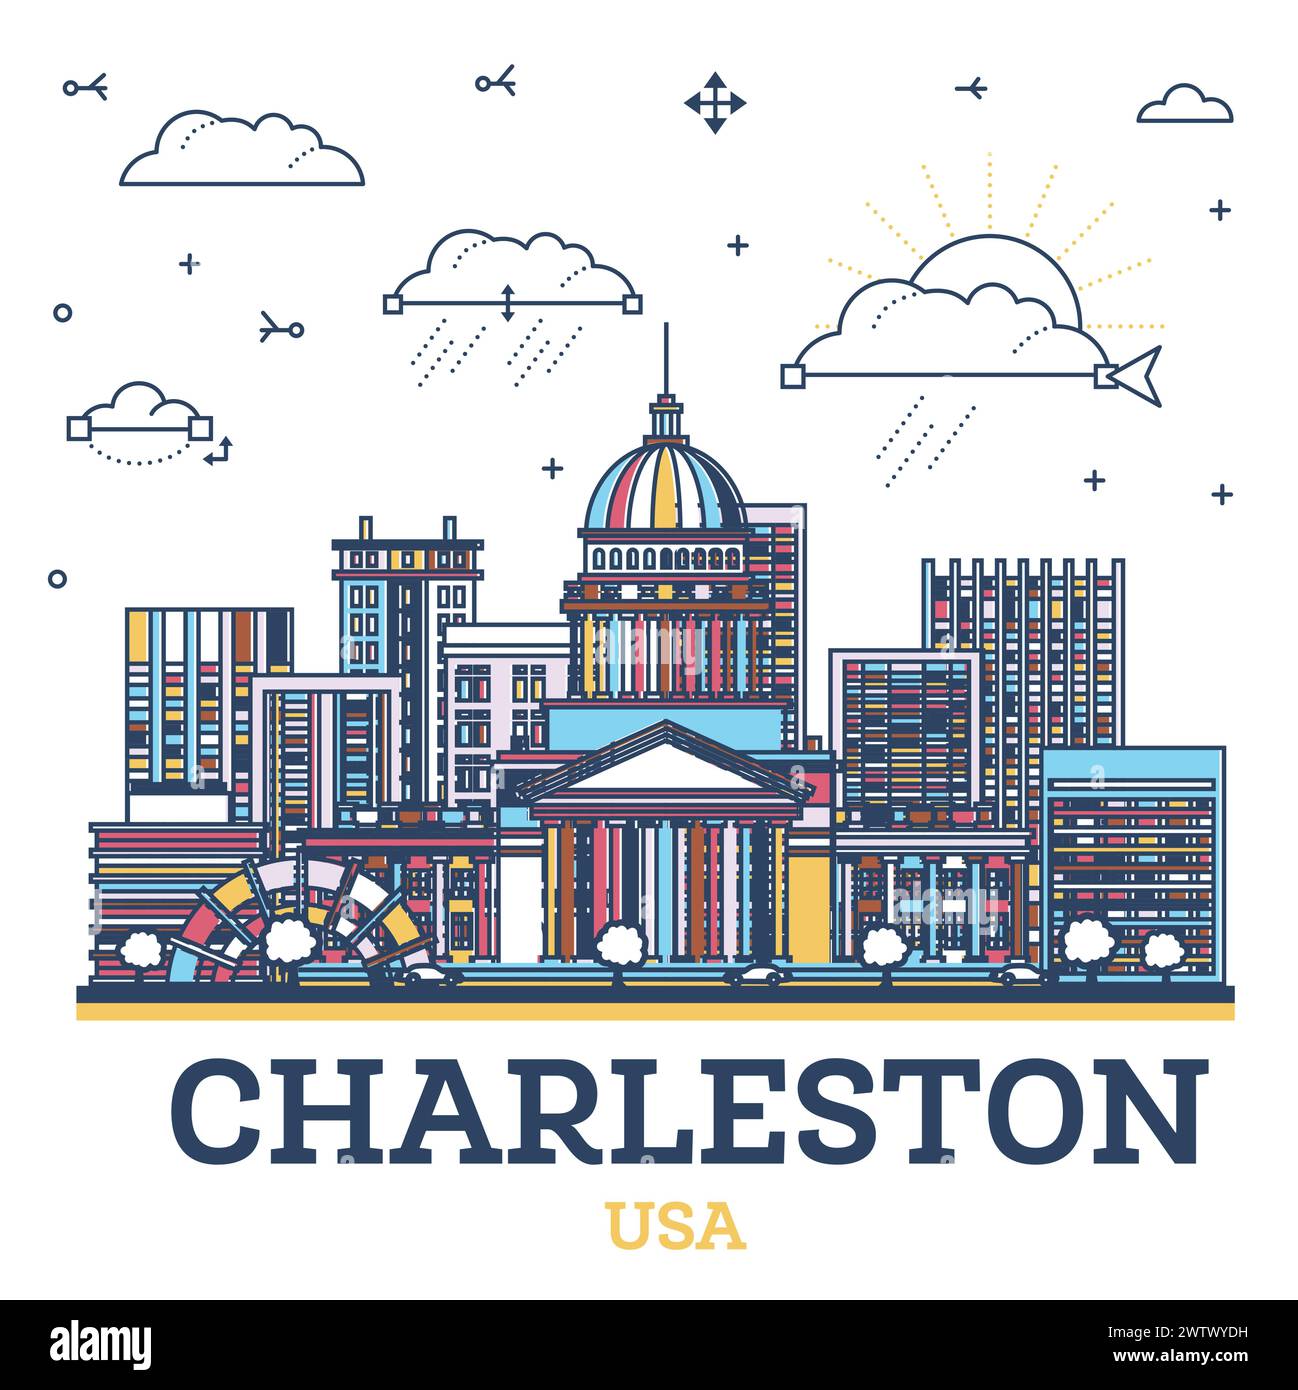 Umreißen Sie die Skyline von Charleston West Virginia USA City mit farbenfrohen modernen Gebäuden, die auf weiß isoliert sind. Vektorabbildung. Stadtbild Von Charleston. Stock Vektor